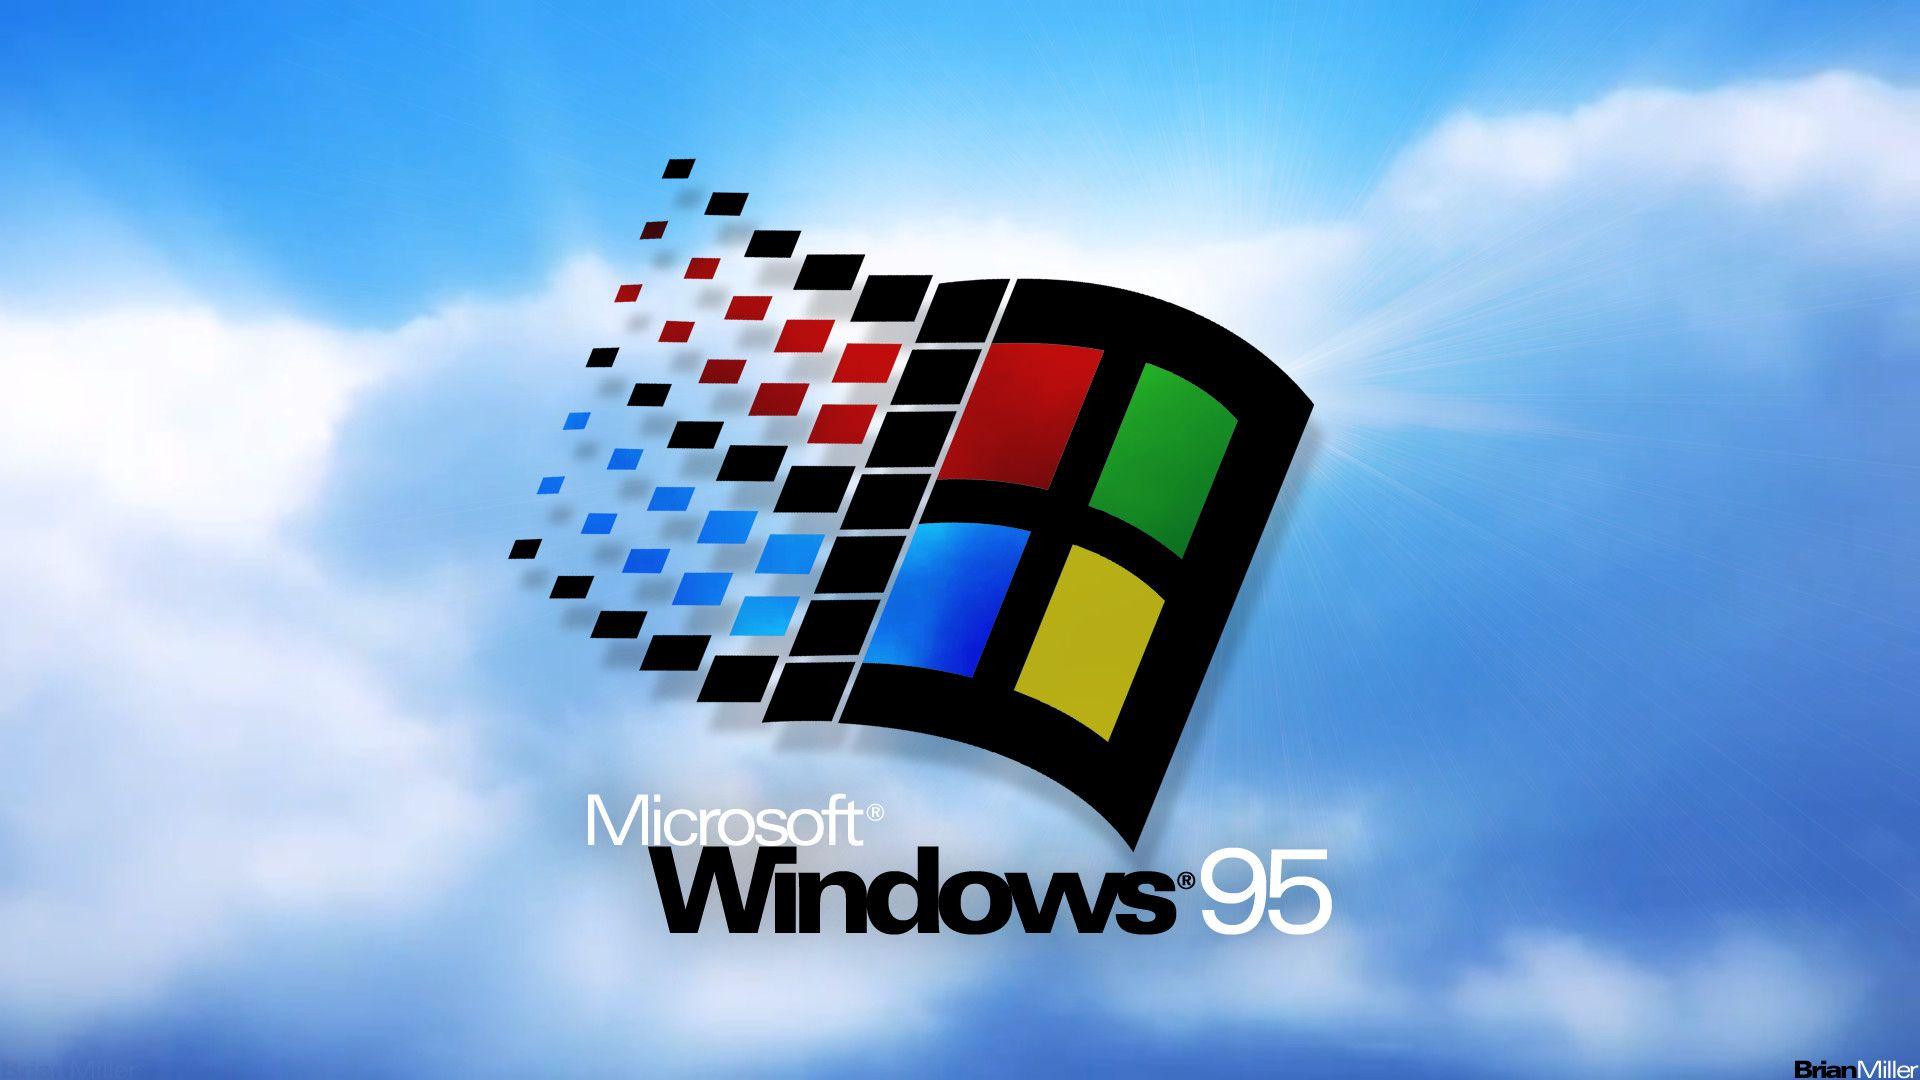 Bạn muốn sở hữu một hình nền desktop Windows 95 miễn phí và độc đáo? Nếu vậy, hãy nhanh chân tải về để trang trí cho màn hình máy tính của bạn trở nên thú vị hơn. Hãy để hình ảnh độc đáo này giúp máy tính của bạn trở nên nổi bật và thu hút hơn.